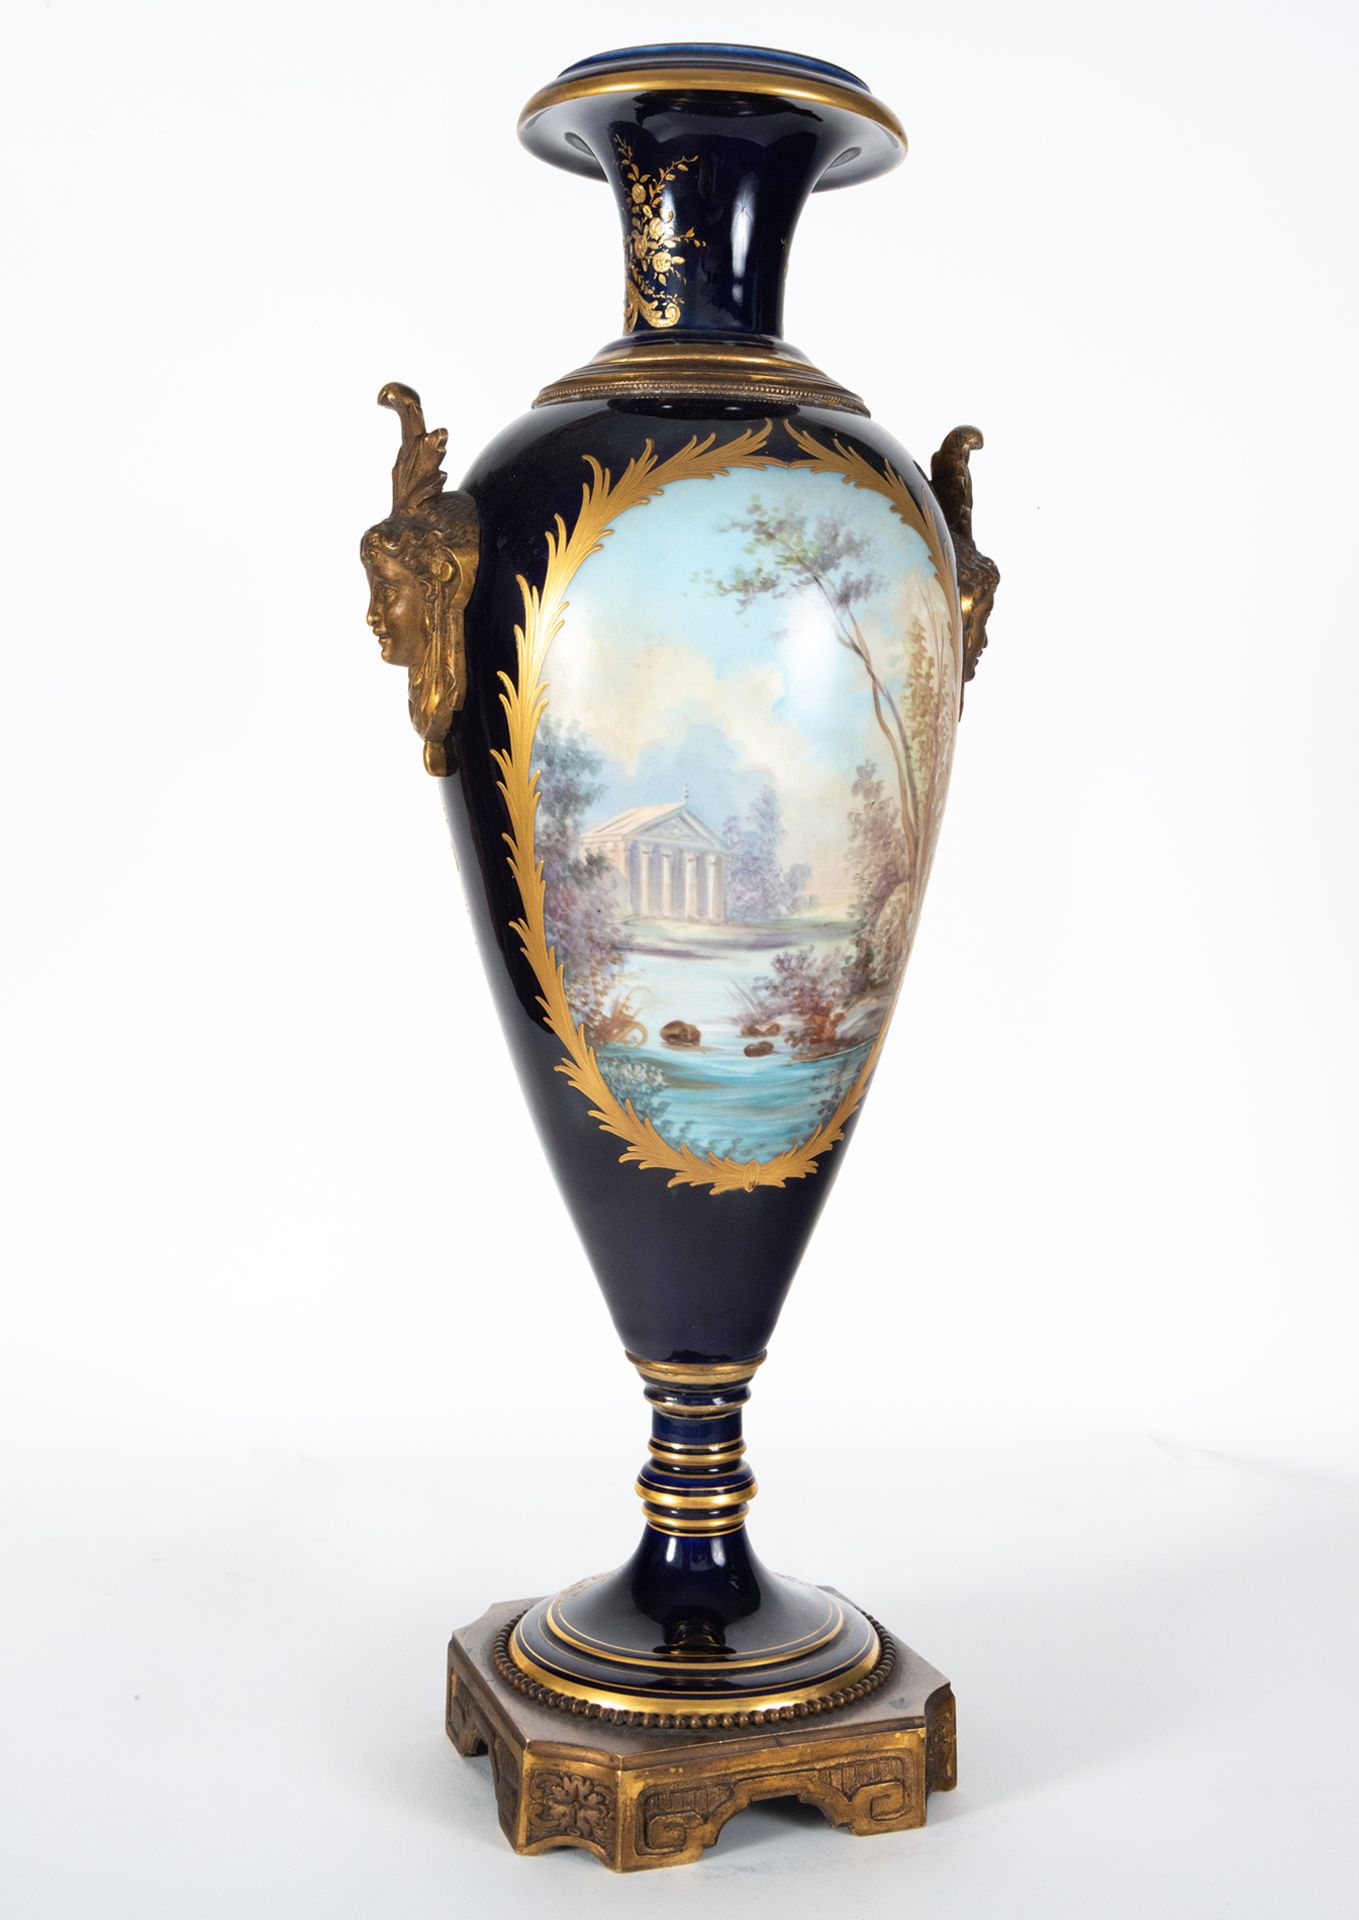 Pair of Svres Vases, 19th century French school - Image 14 of 15